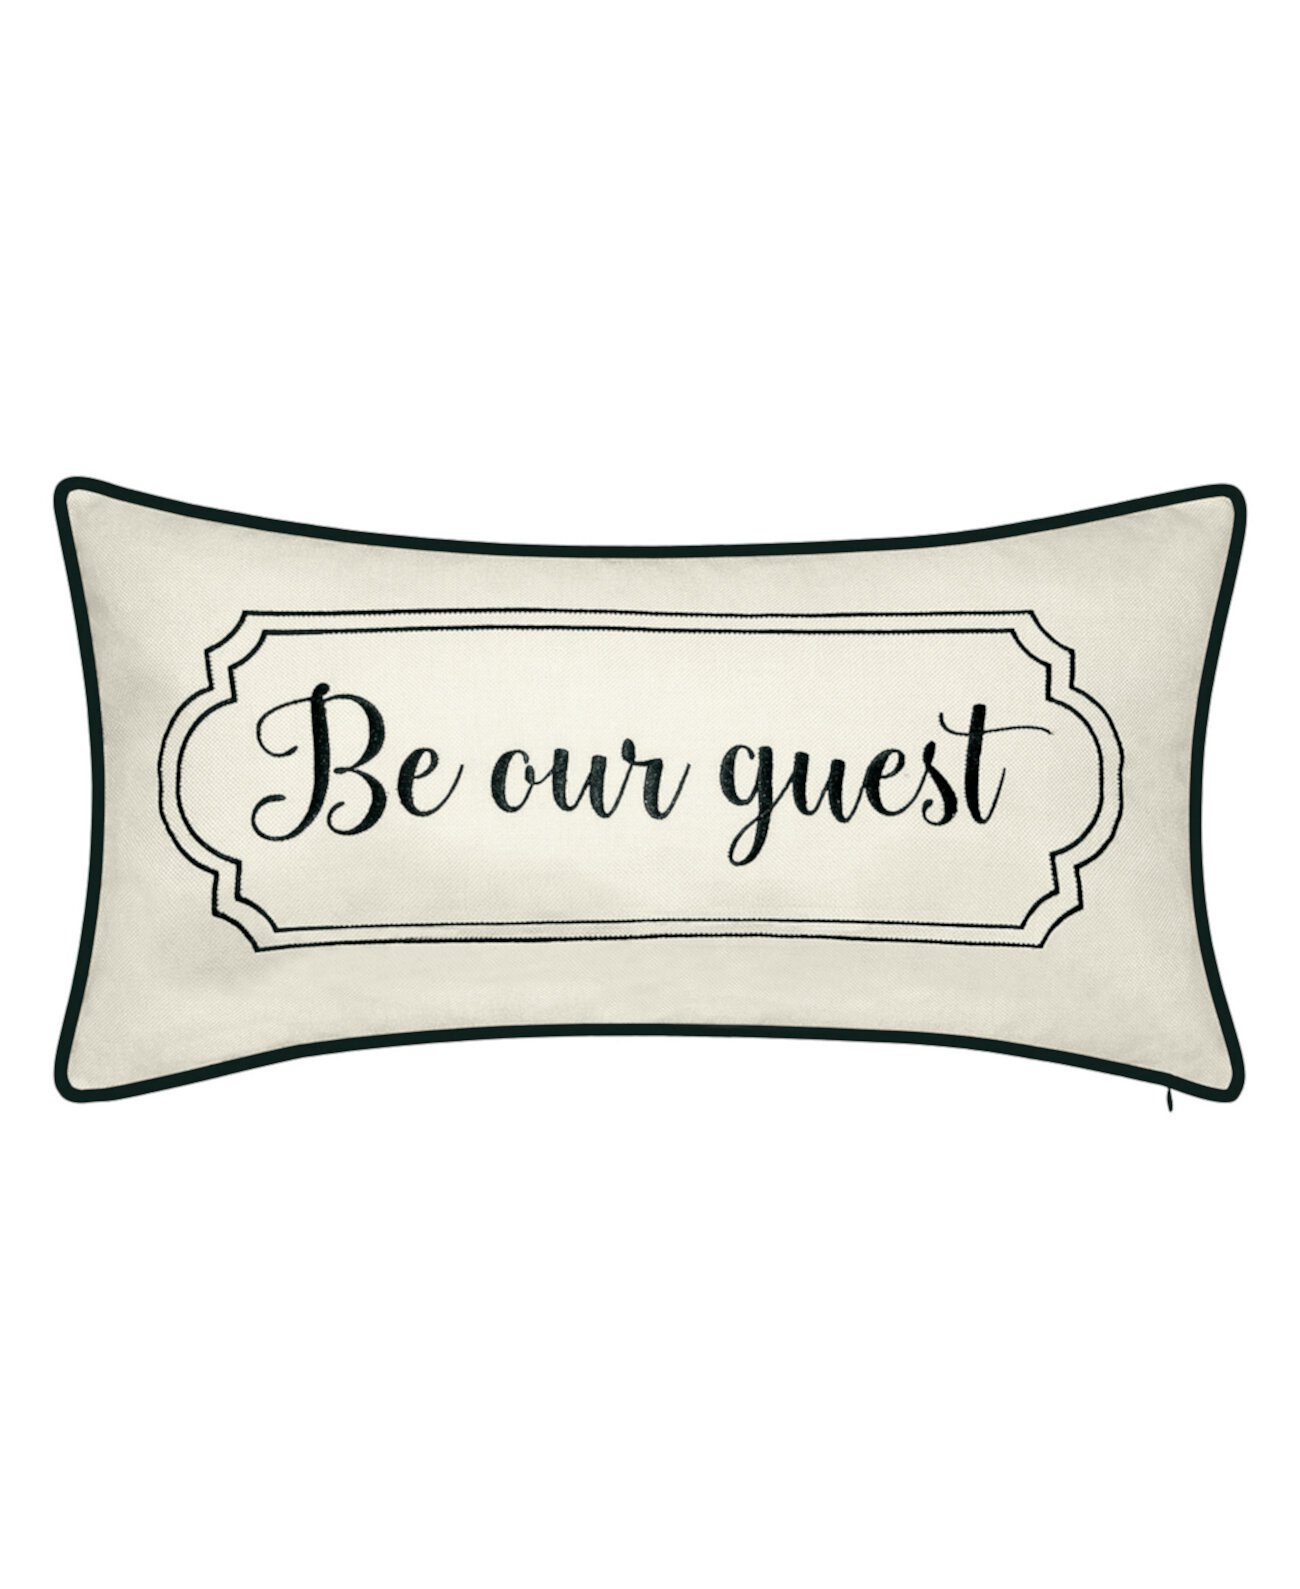 Праздничная подушка декоративная с вышивкой "Будь нашим гостем", 25 "x 13" Edie@Home